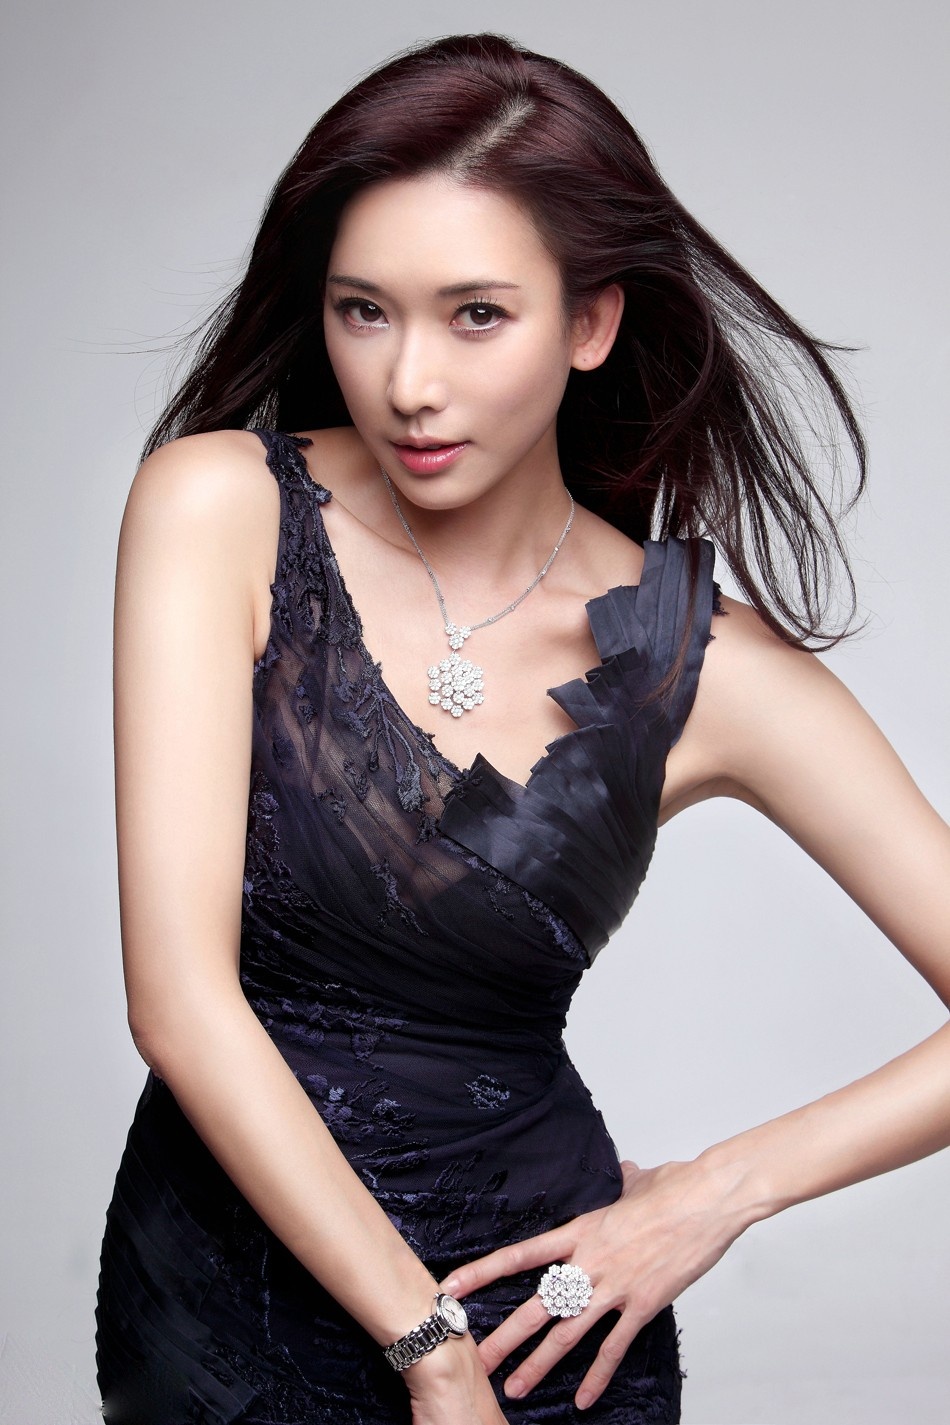 20大最漂亮的女明星排行榜,赵丽颖竟然只能排第13名